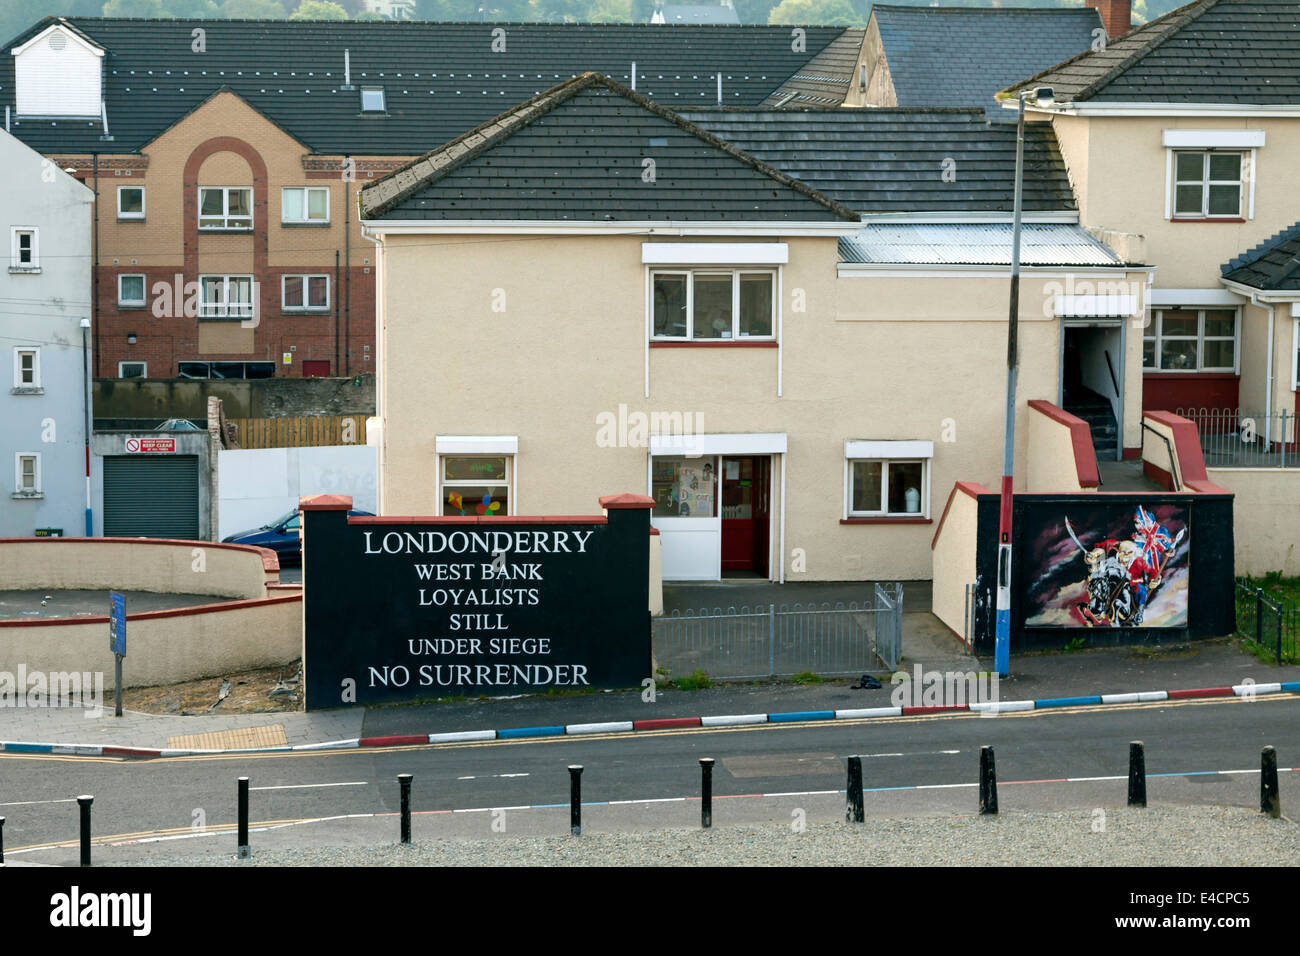 Loyalist Wandbild in Londonderry, Nordirland, Vereinigtes Königreich: Westjordanland - Loyalisten-Still unter Belagerung - No Surrender. Stockfoto